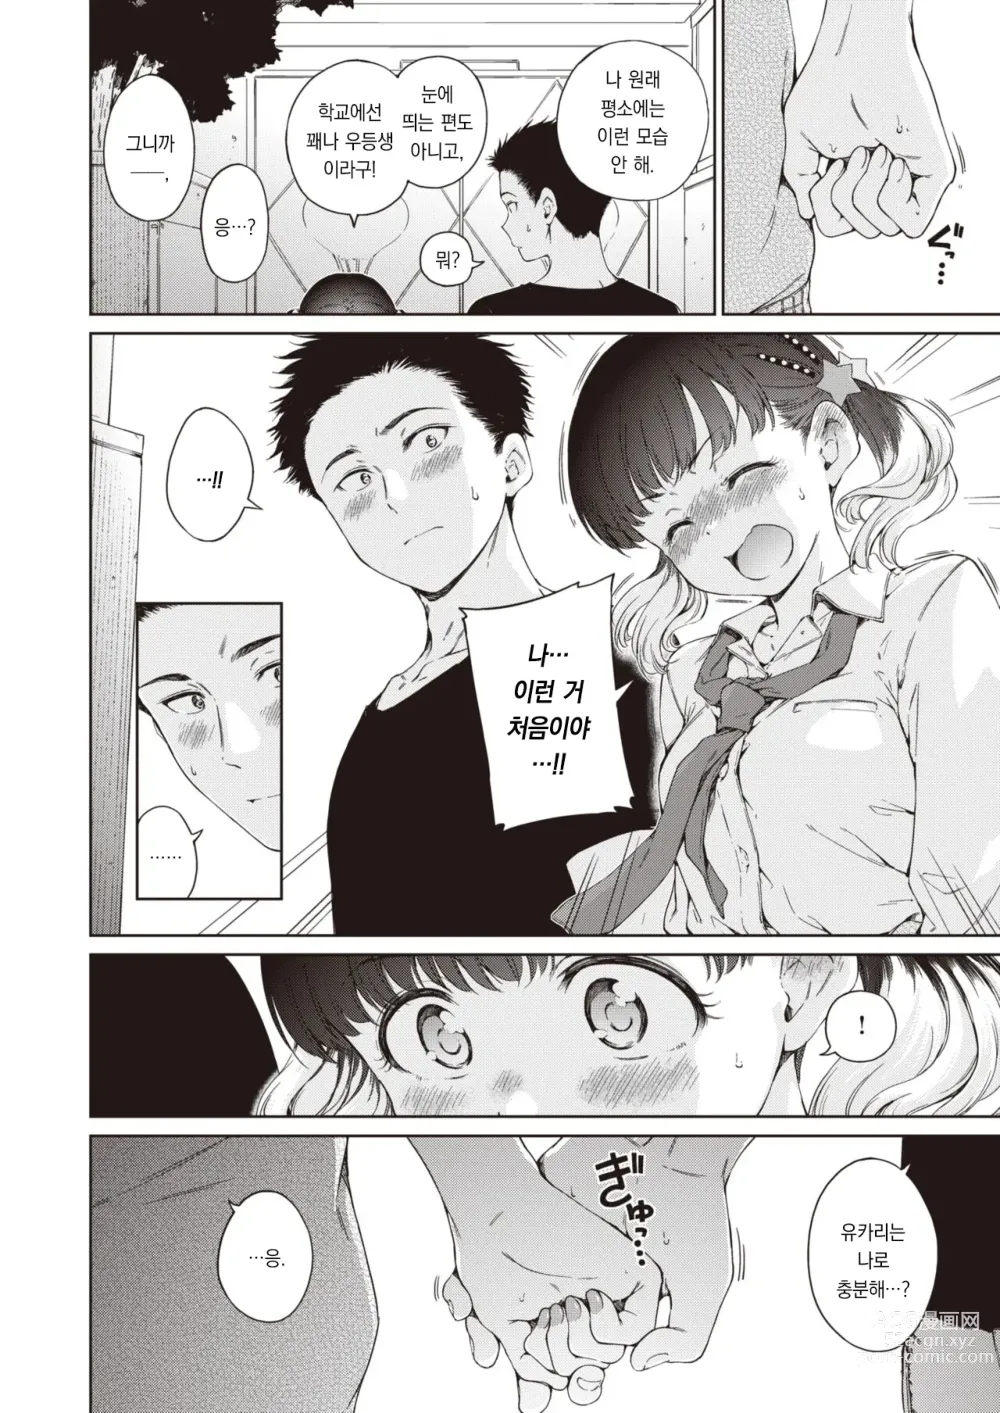 Page 11 of manga 여름, 기분 열기구.